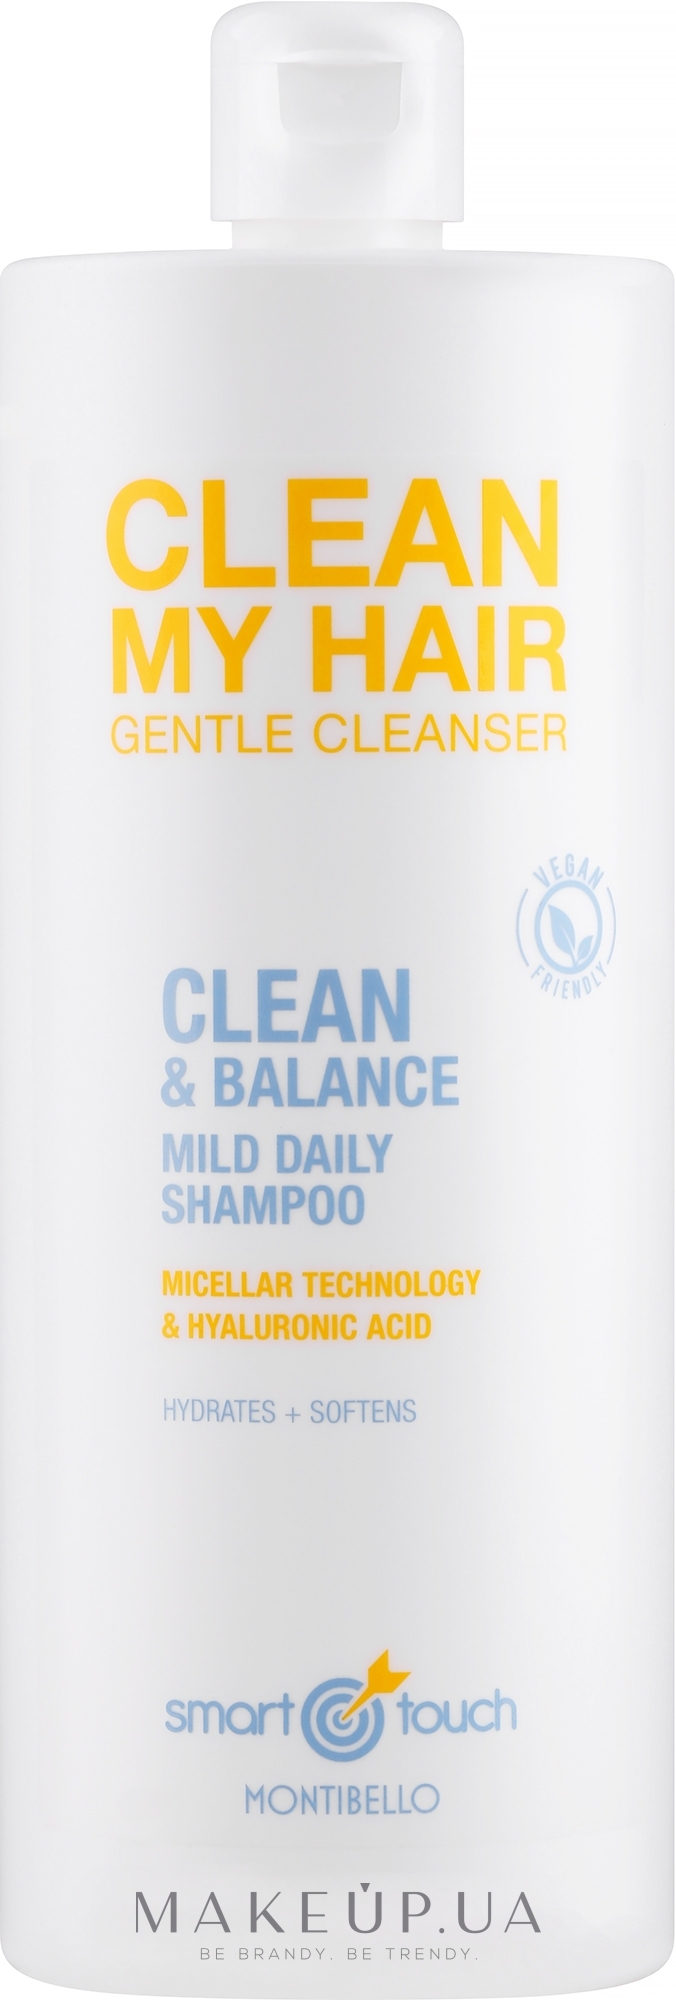 Мицеллярный шампунь для волос - Montibello Smart Touch Clean My Hair — фото 1000ml